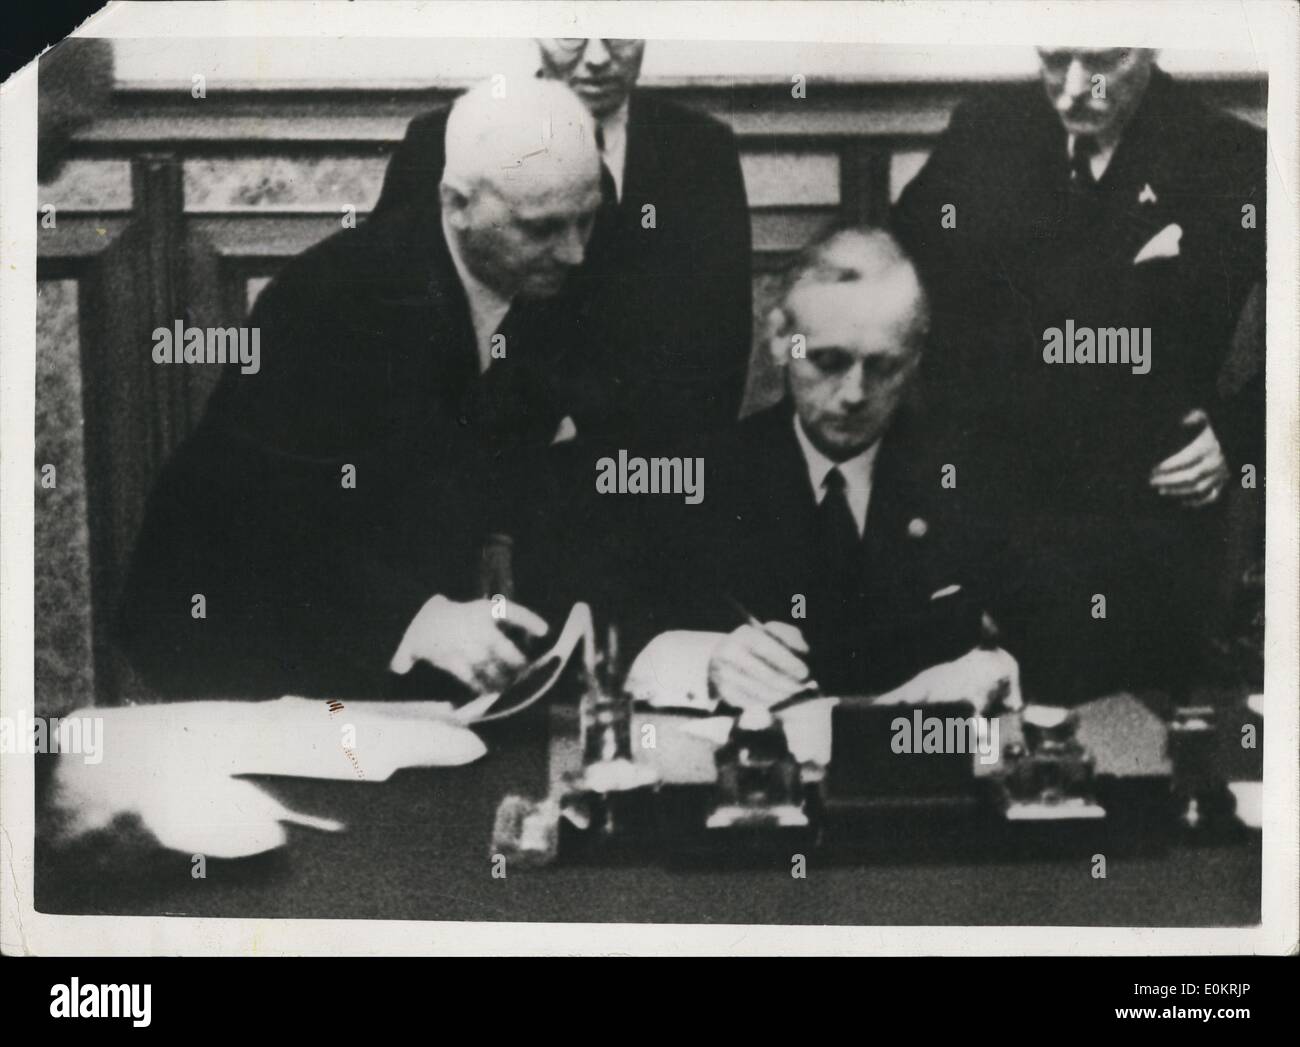 08 août, 1939 - La signature de l'passé de non-agression entre la Russie soviétique et allemand dans le Kremlin à Moscou, le ministre allemand des affaires étrangères, von Ribbentrop signe observé par comte von der Schulenberg, l'ambassadeur allemand à Moscou. Banque D'Images